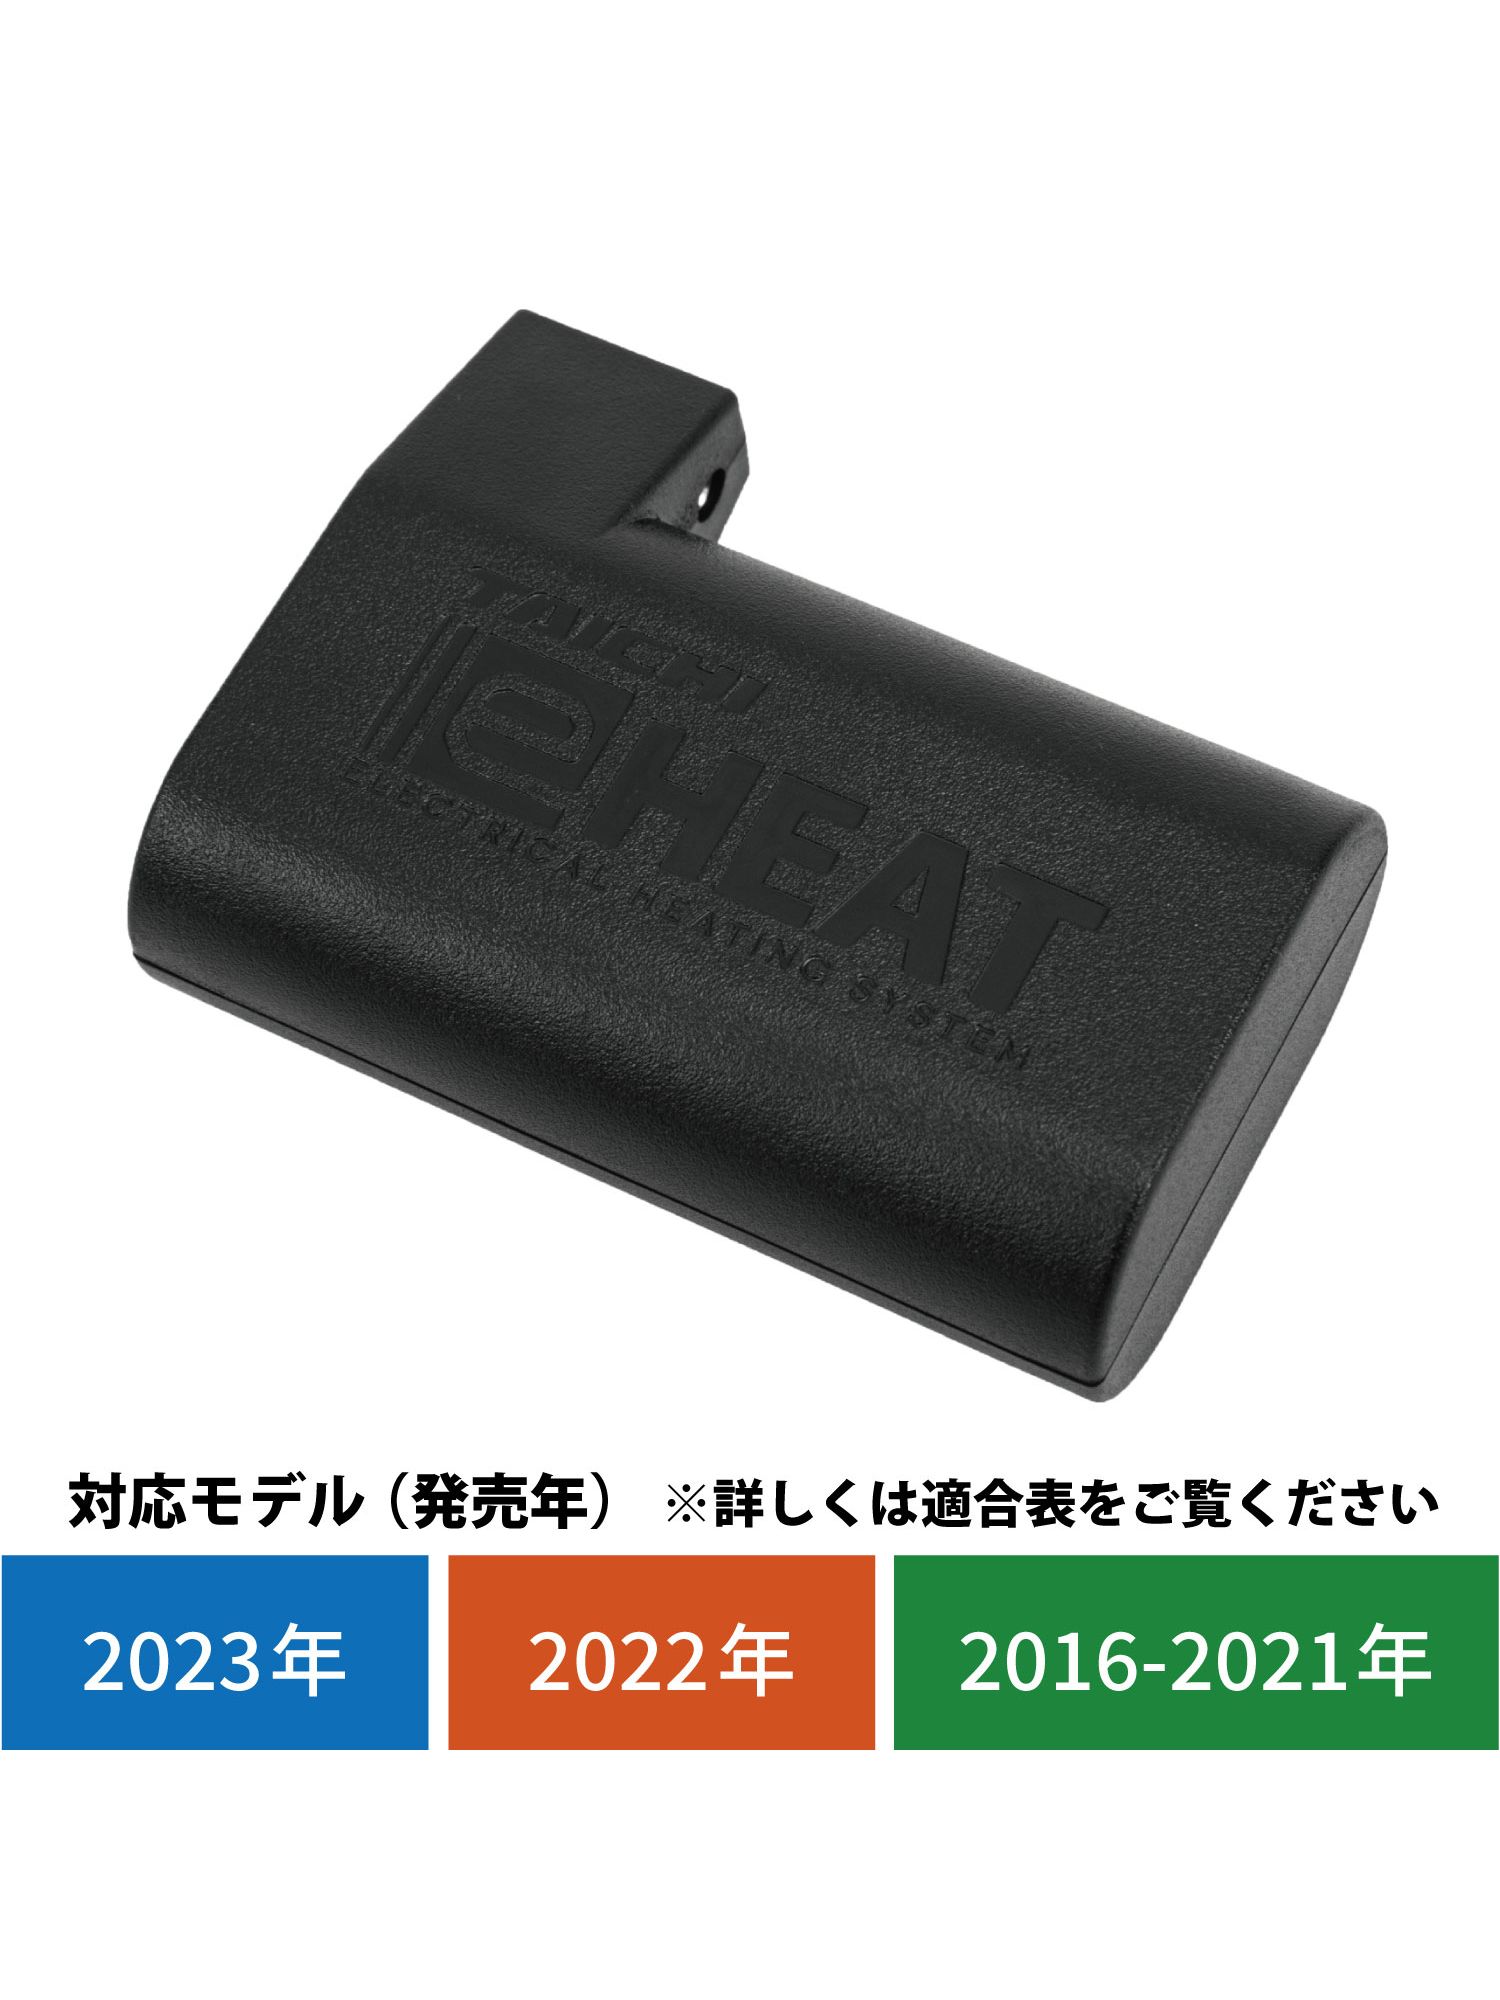 RSP065 | e-HEAT 7.2V専用バッテリー:1個/3-5T.3-5U